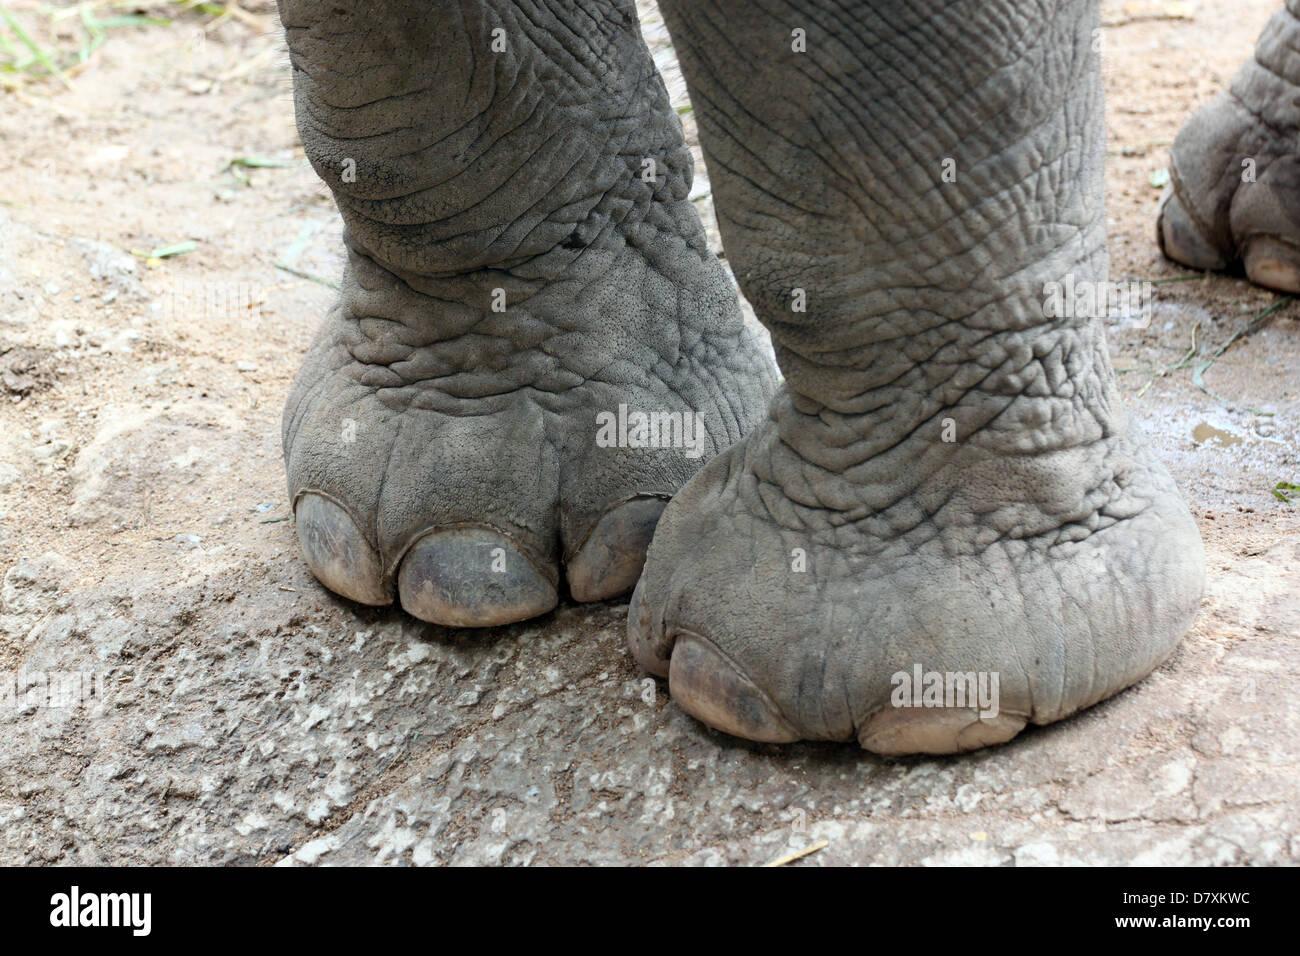 Asiatische Elefanten Füße gesund. Stockfoto